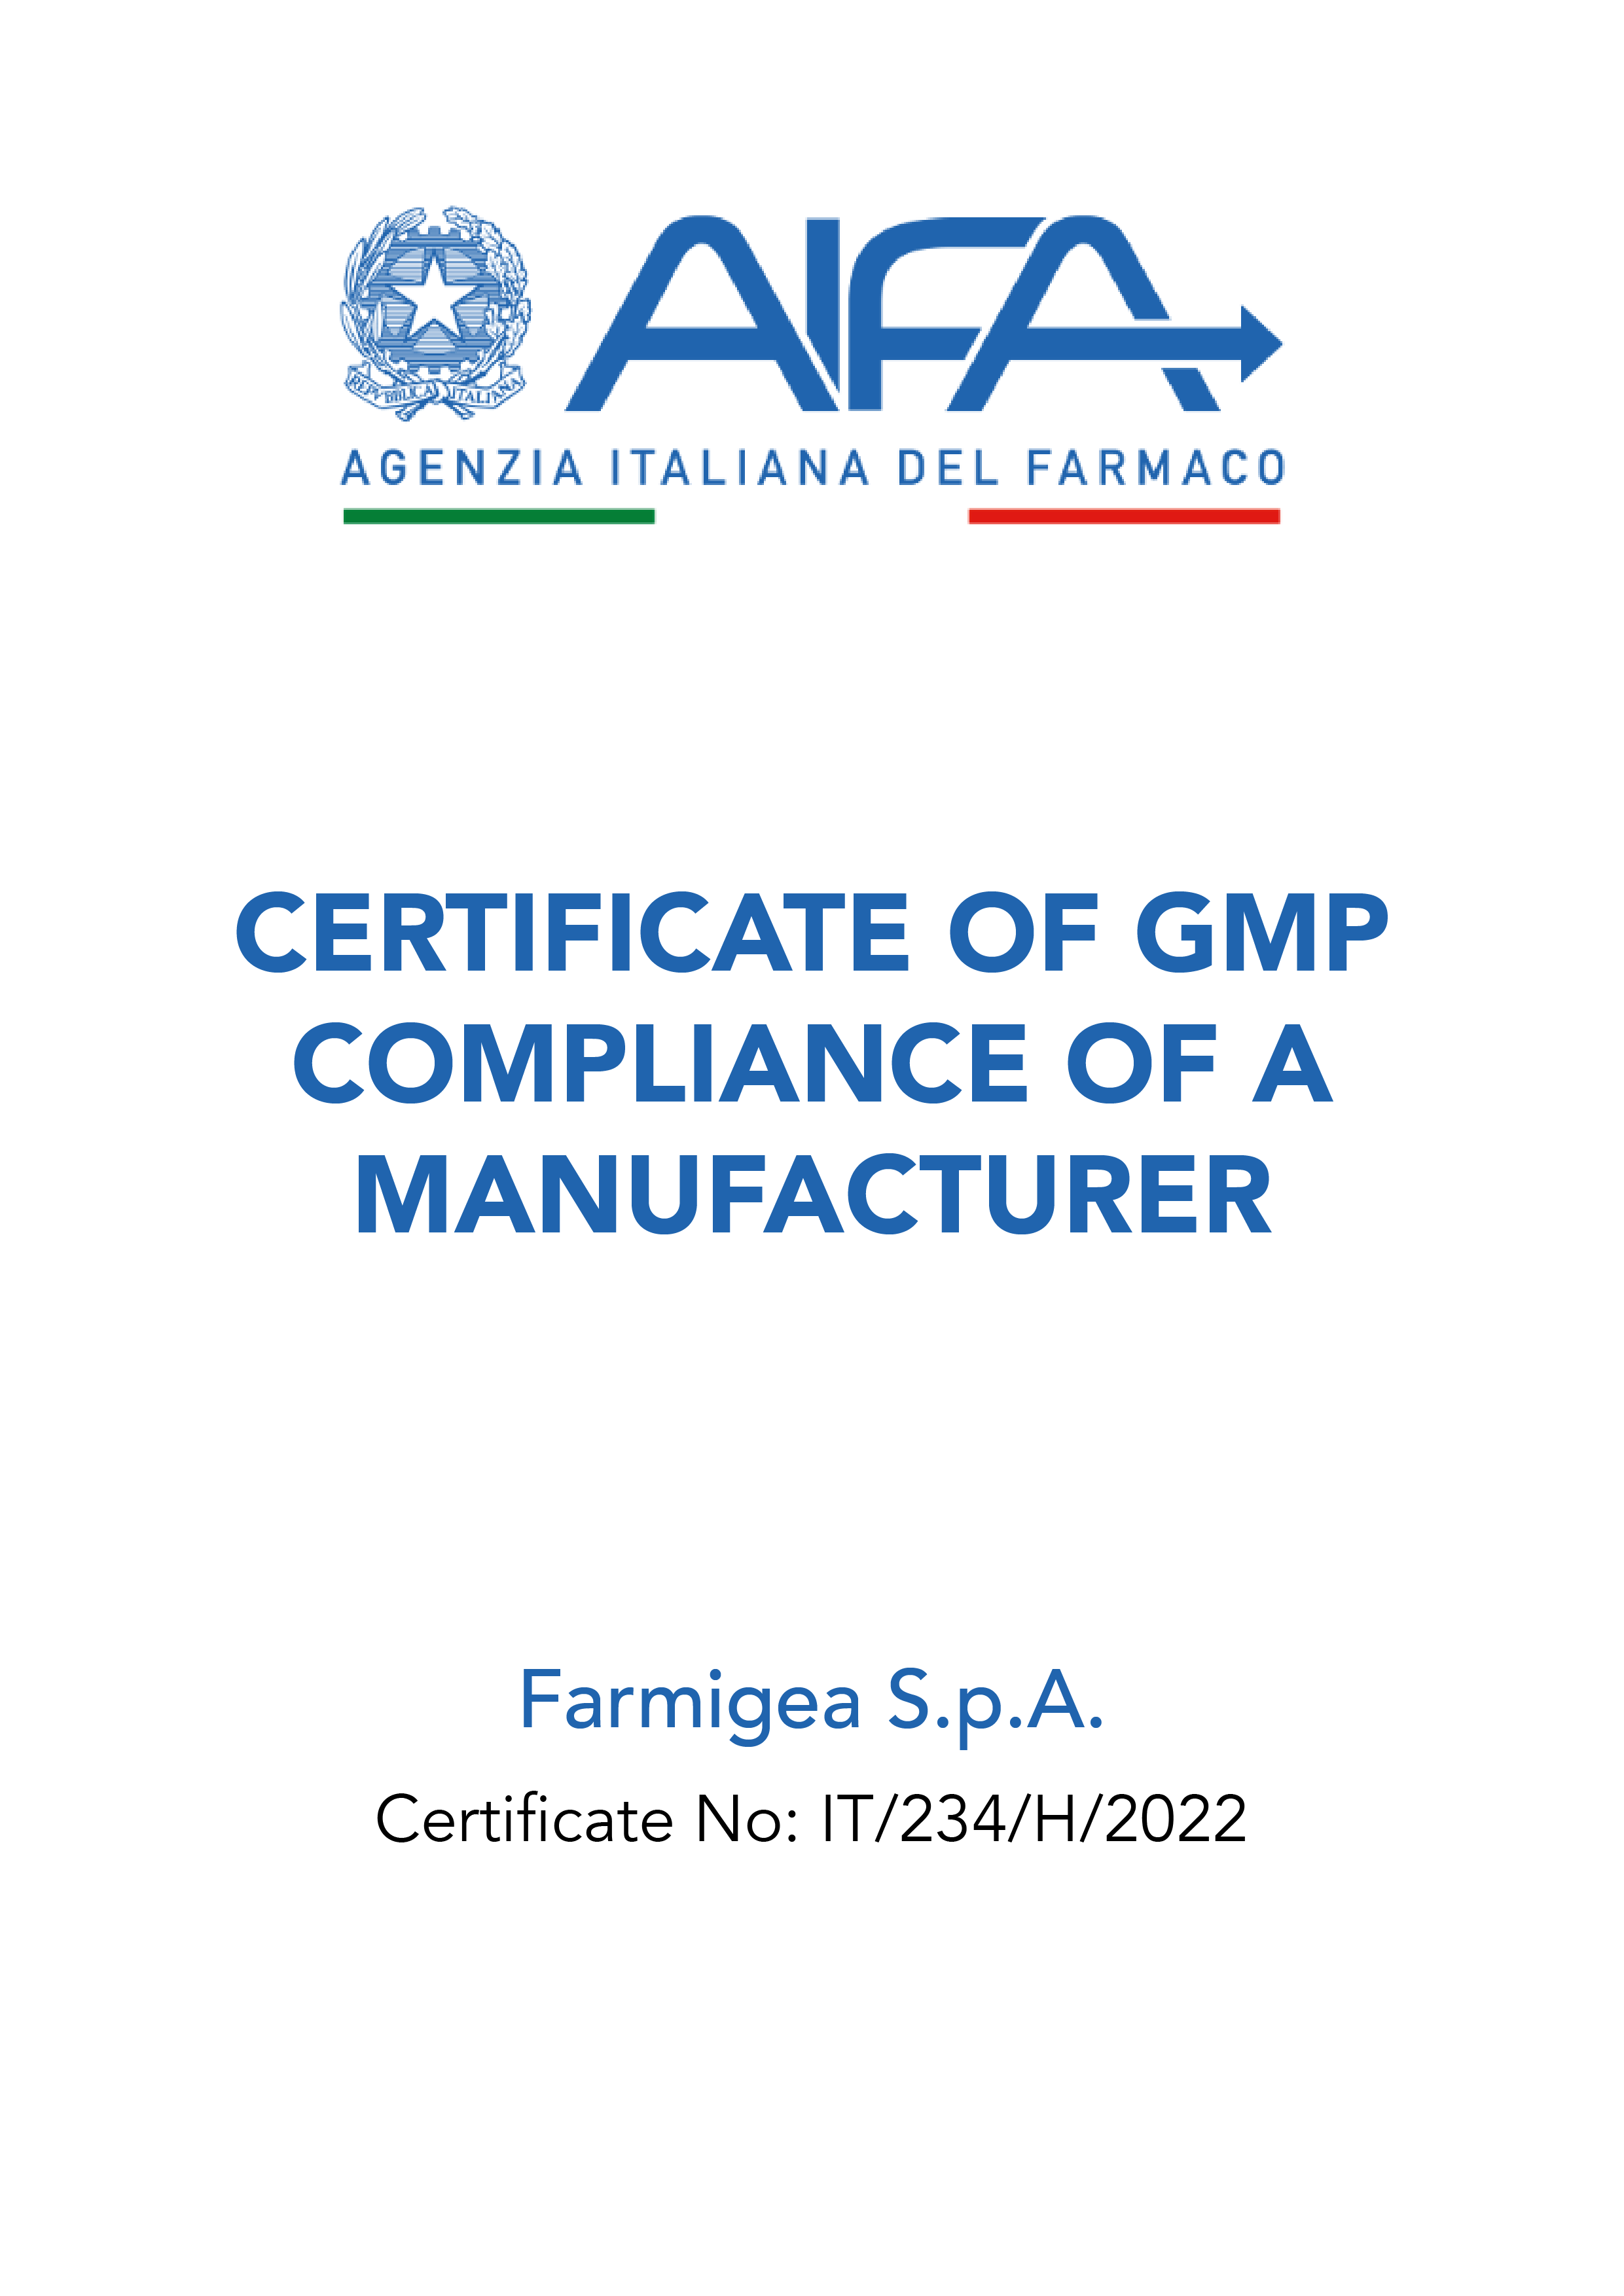 GMP Certification Aifa